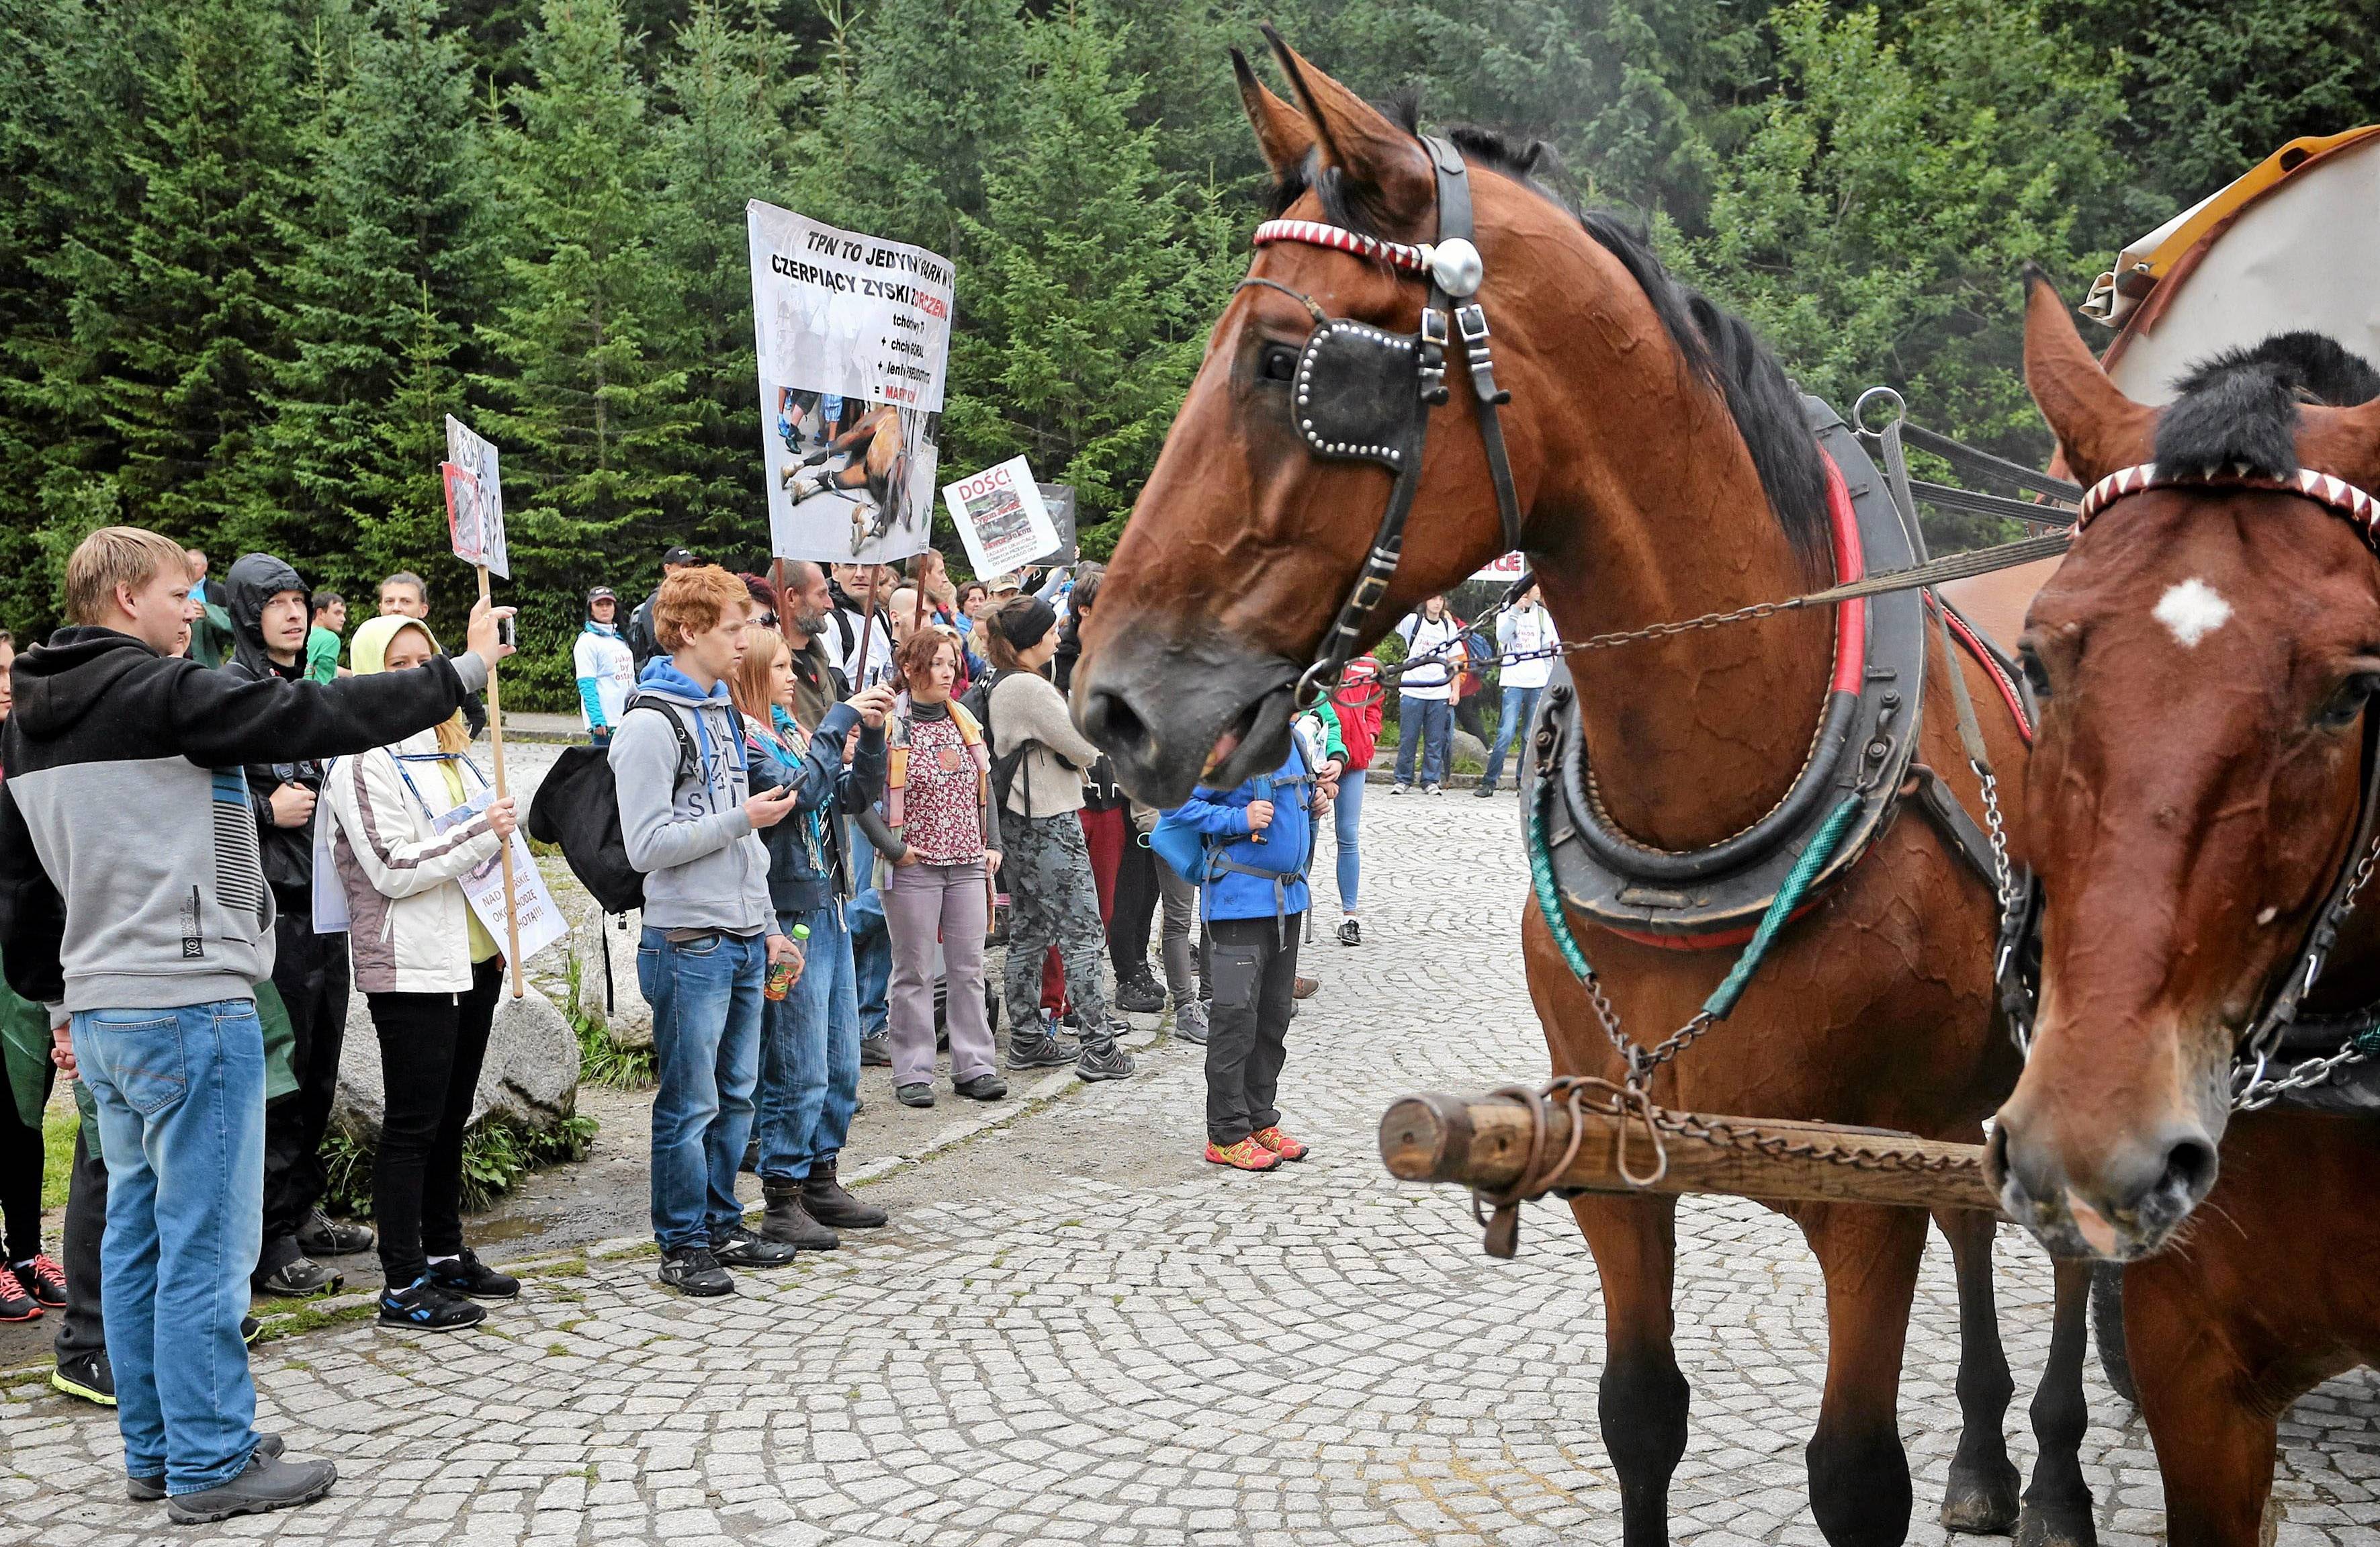 konie, a obok nich protestujące osoby